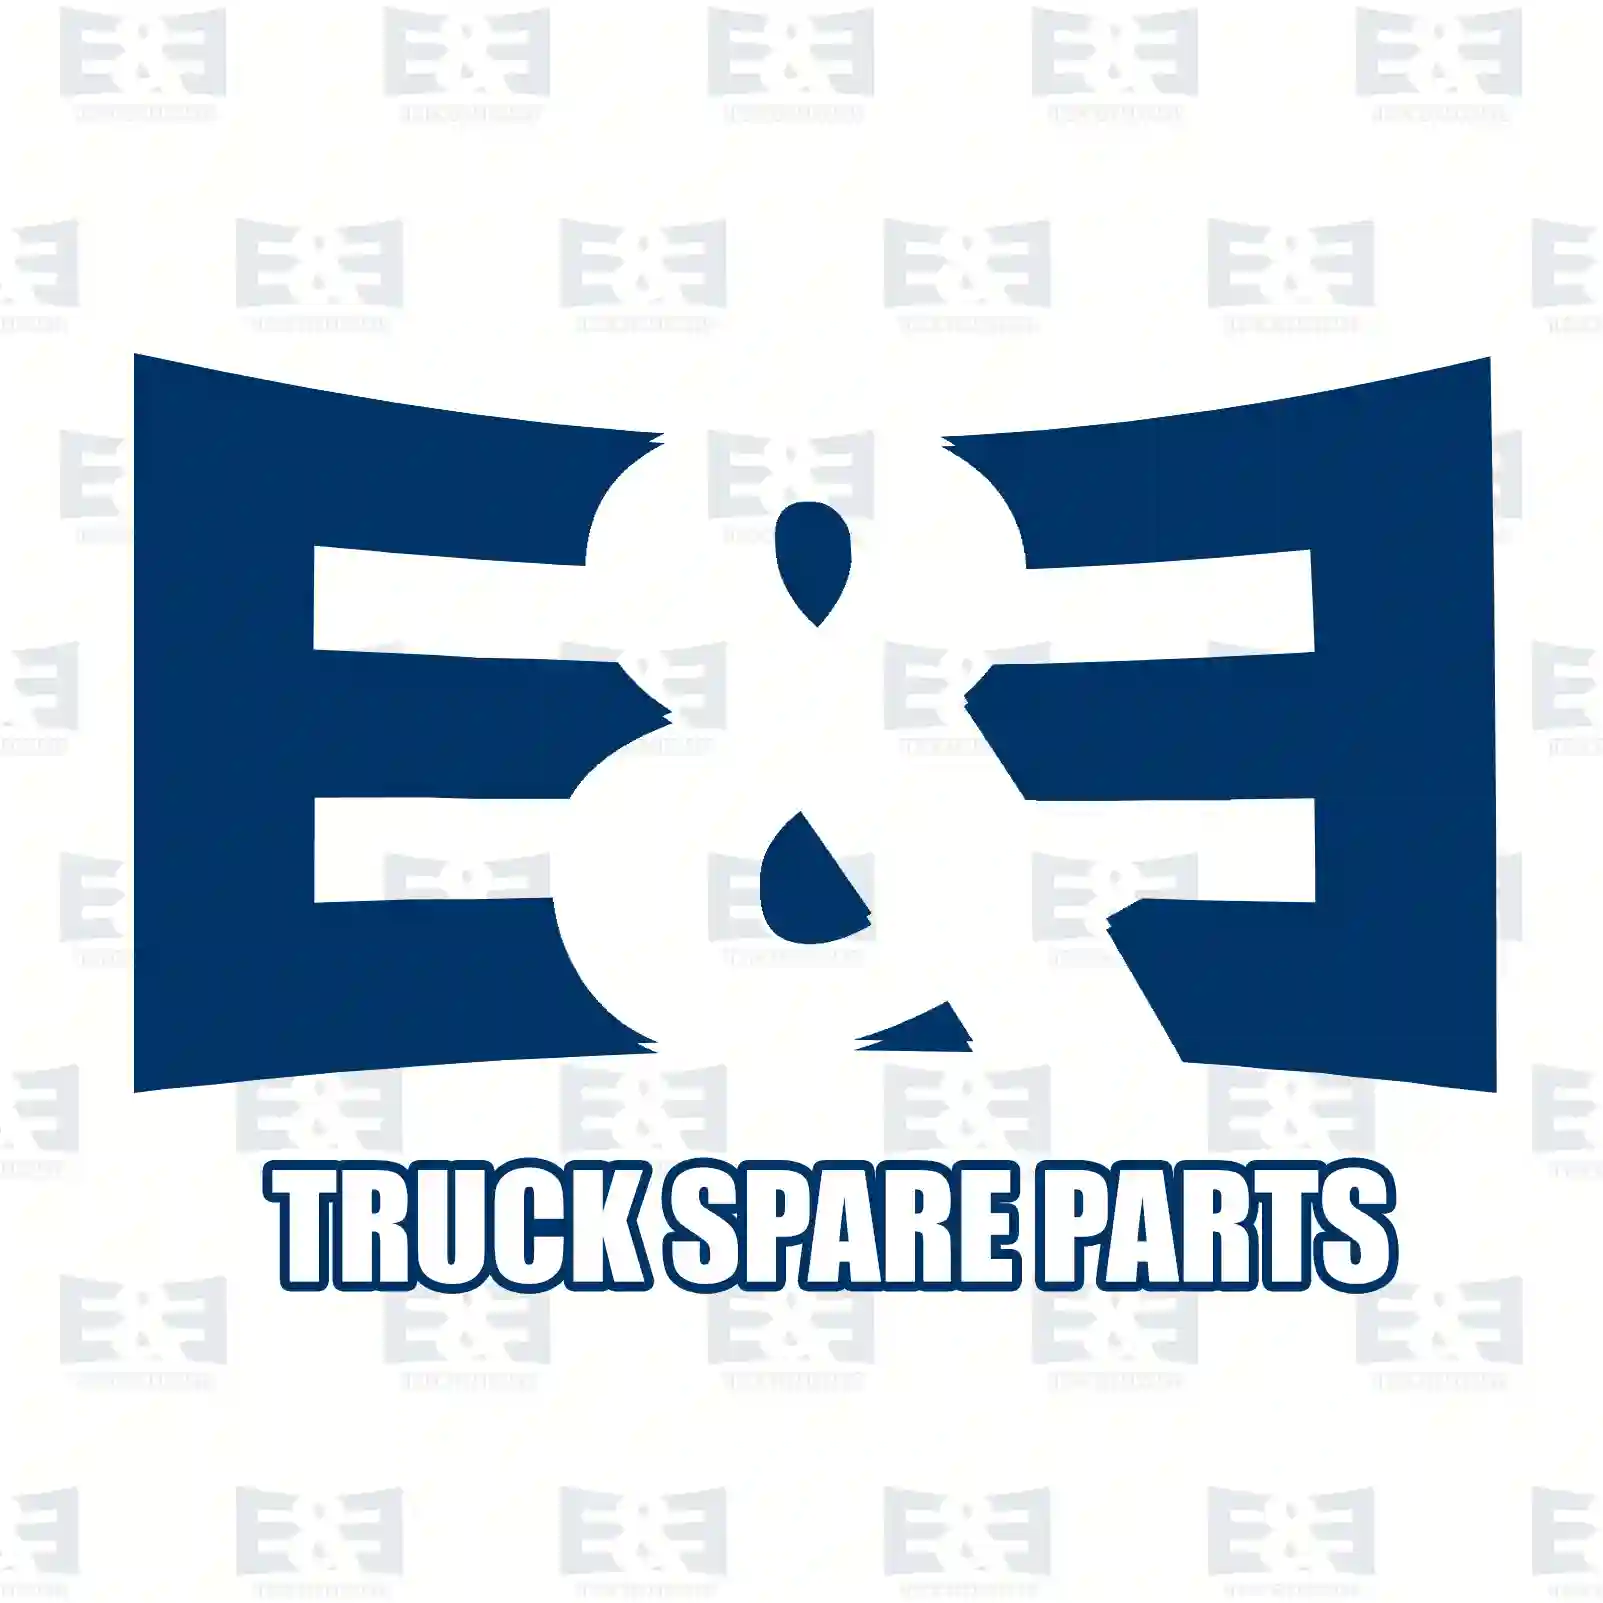 Brake drum, 2E2296631, 3904230001, , , , , , , ||  2E2296631 E&E Truck Spare Parts | Truck Spare Parts, Auotomotive Spare Parts Brake drum, 2E2296631, 3904230001, , , , , , , ||  2E2296631 E&E Truck Spare Parts | Truck Spare Parts, Auotomotive Spare Parts